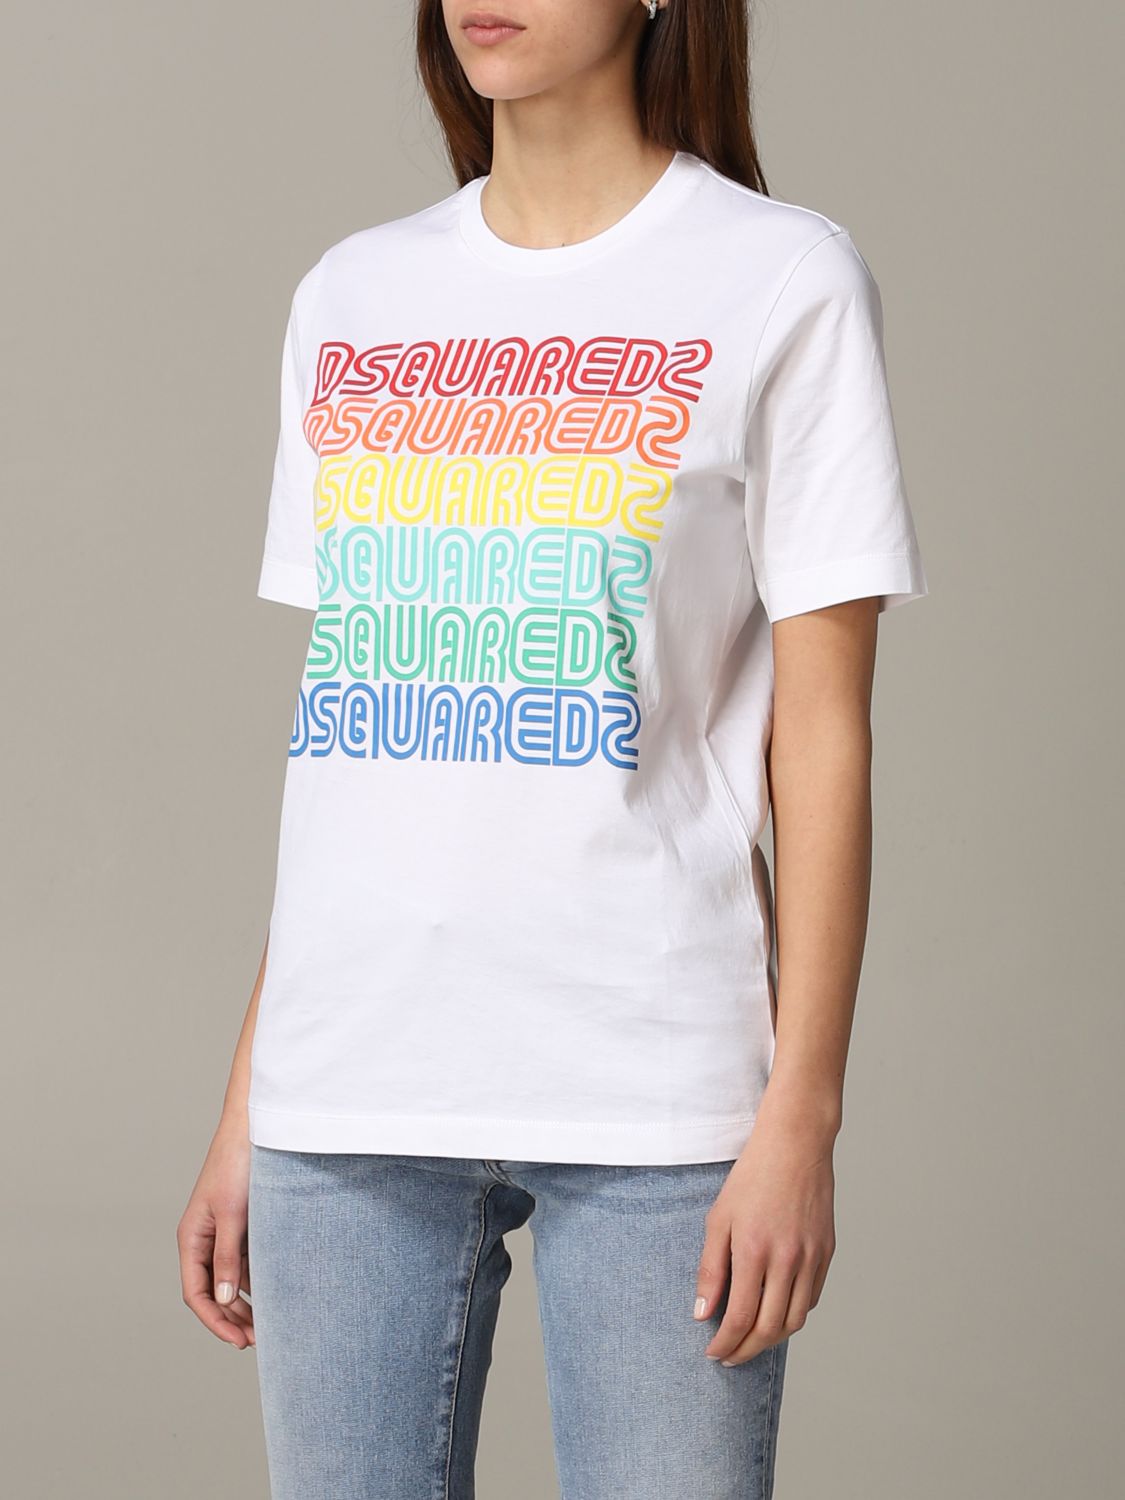 dsquared2 t shirt imprimé